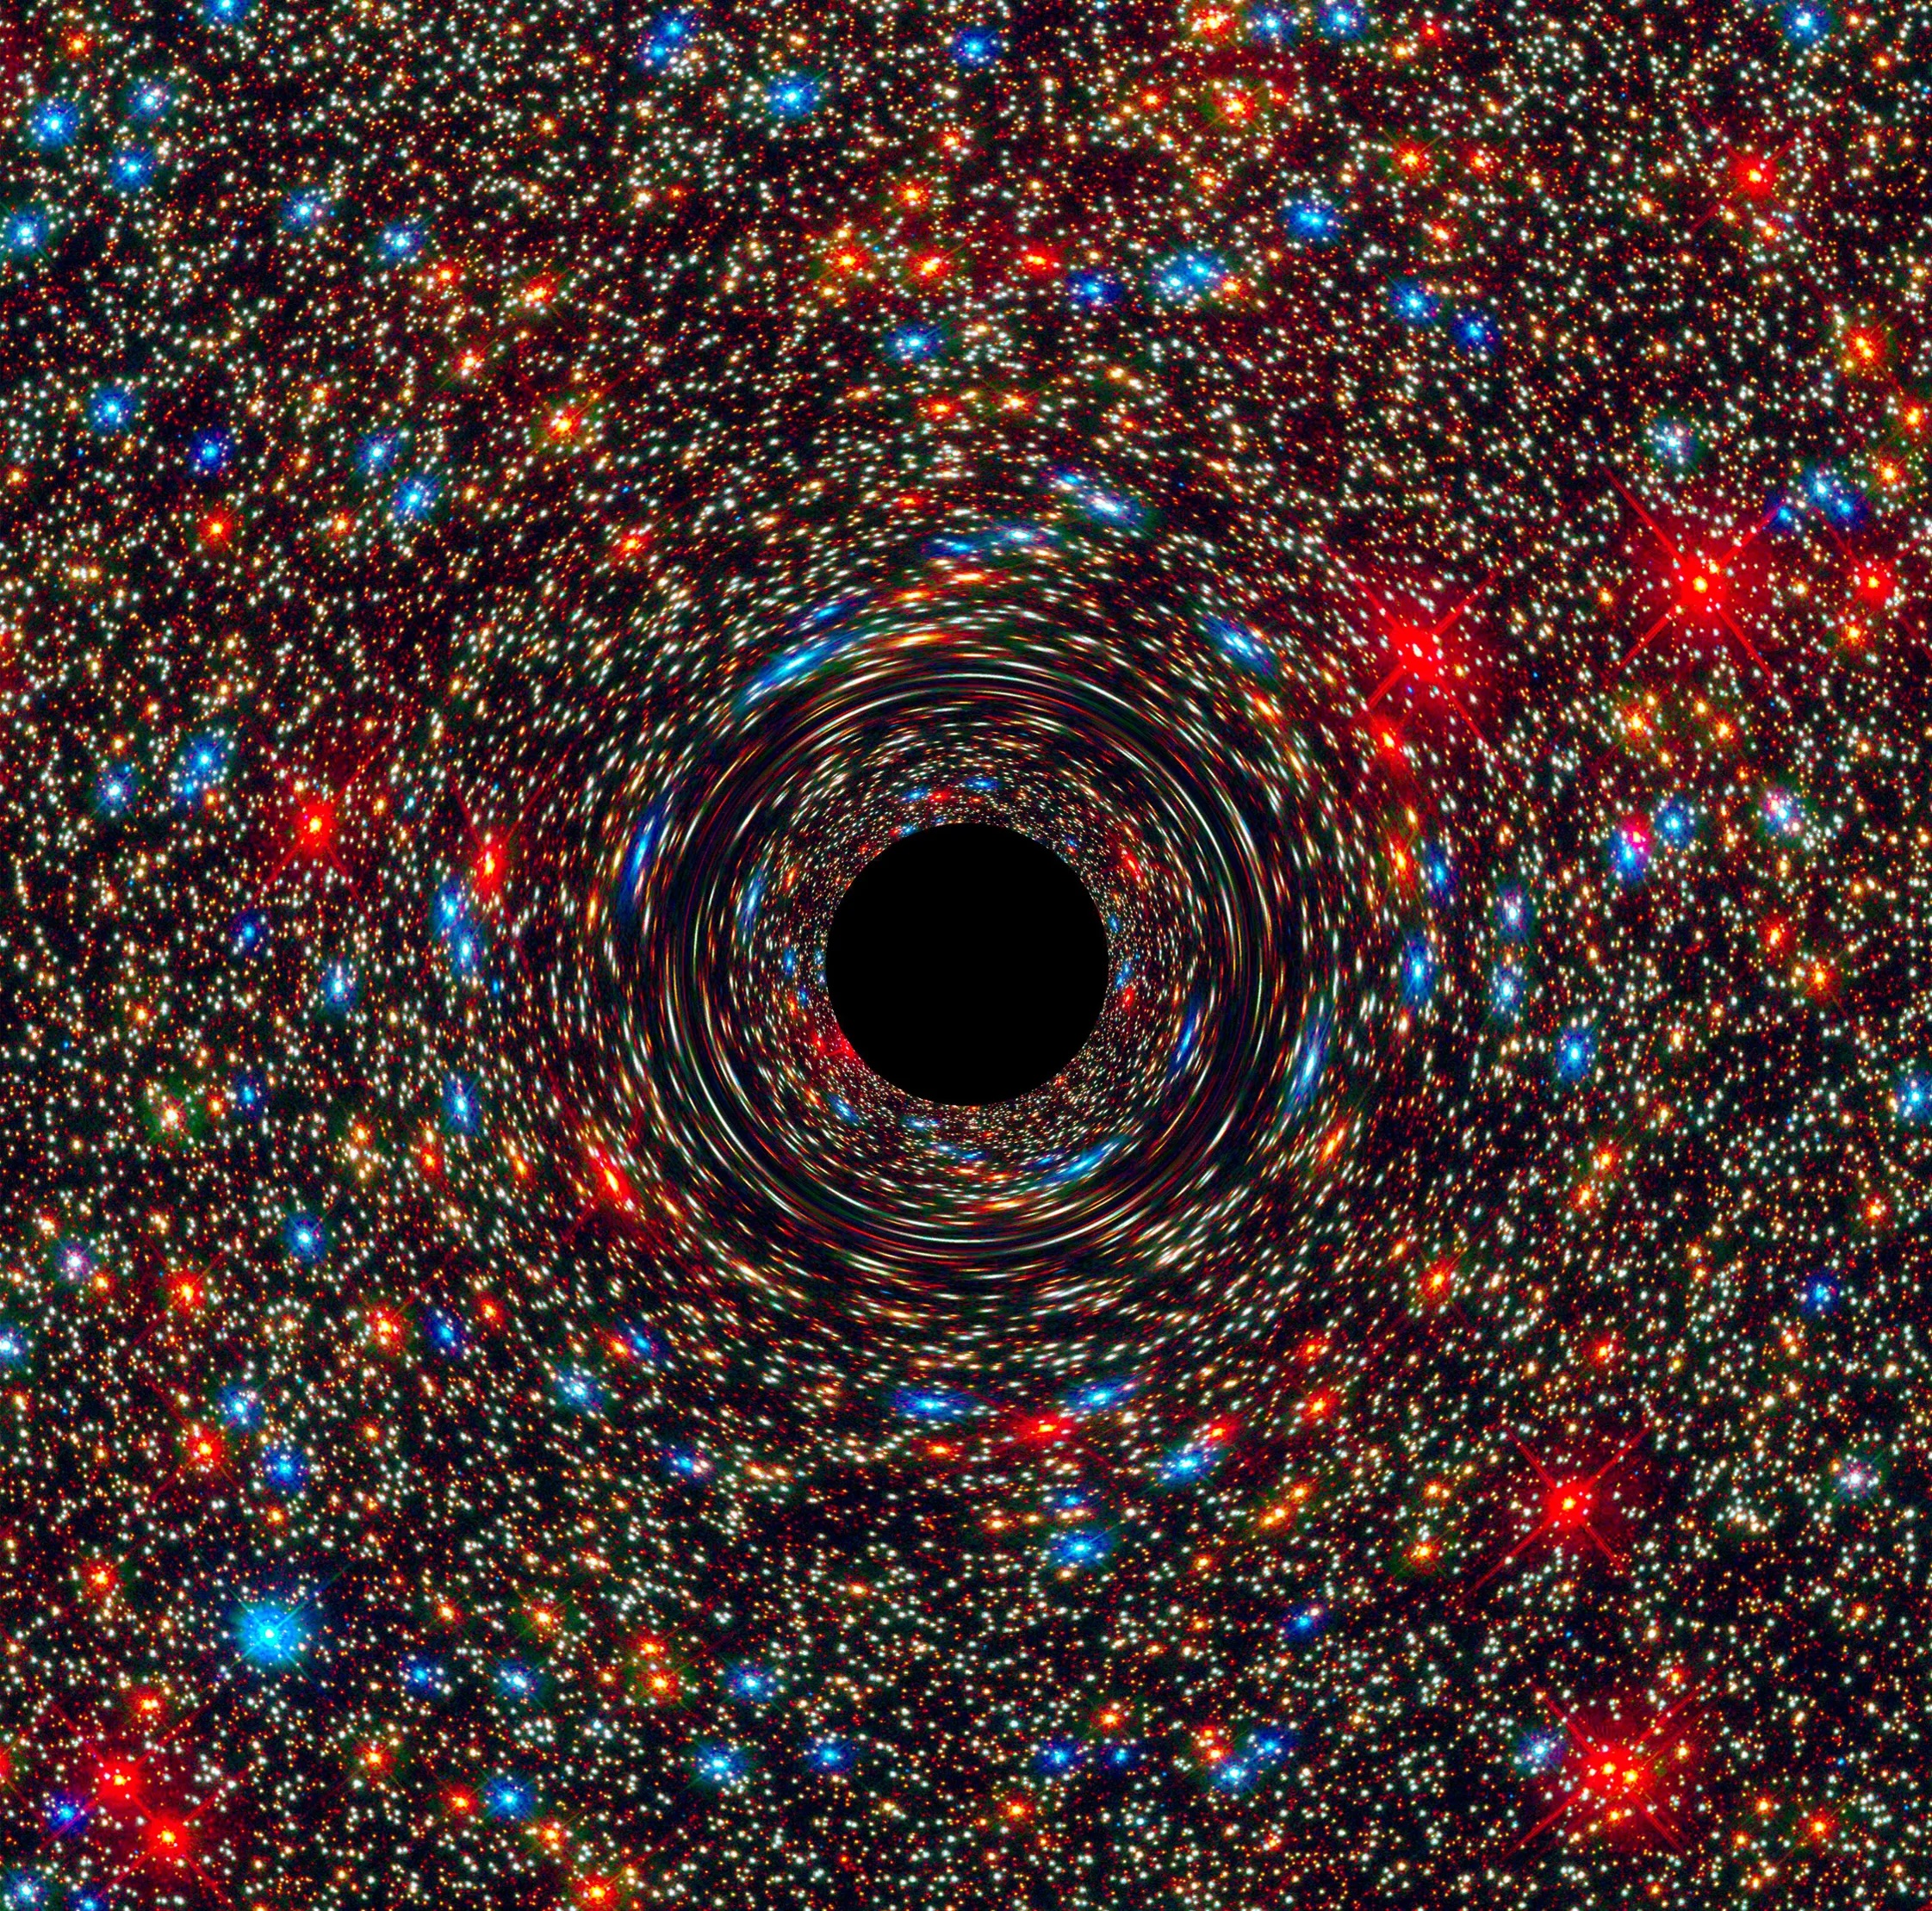 Ilustración de un agujero supermasivo rodeado de estrellas de varios colores.